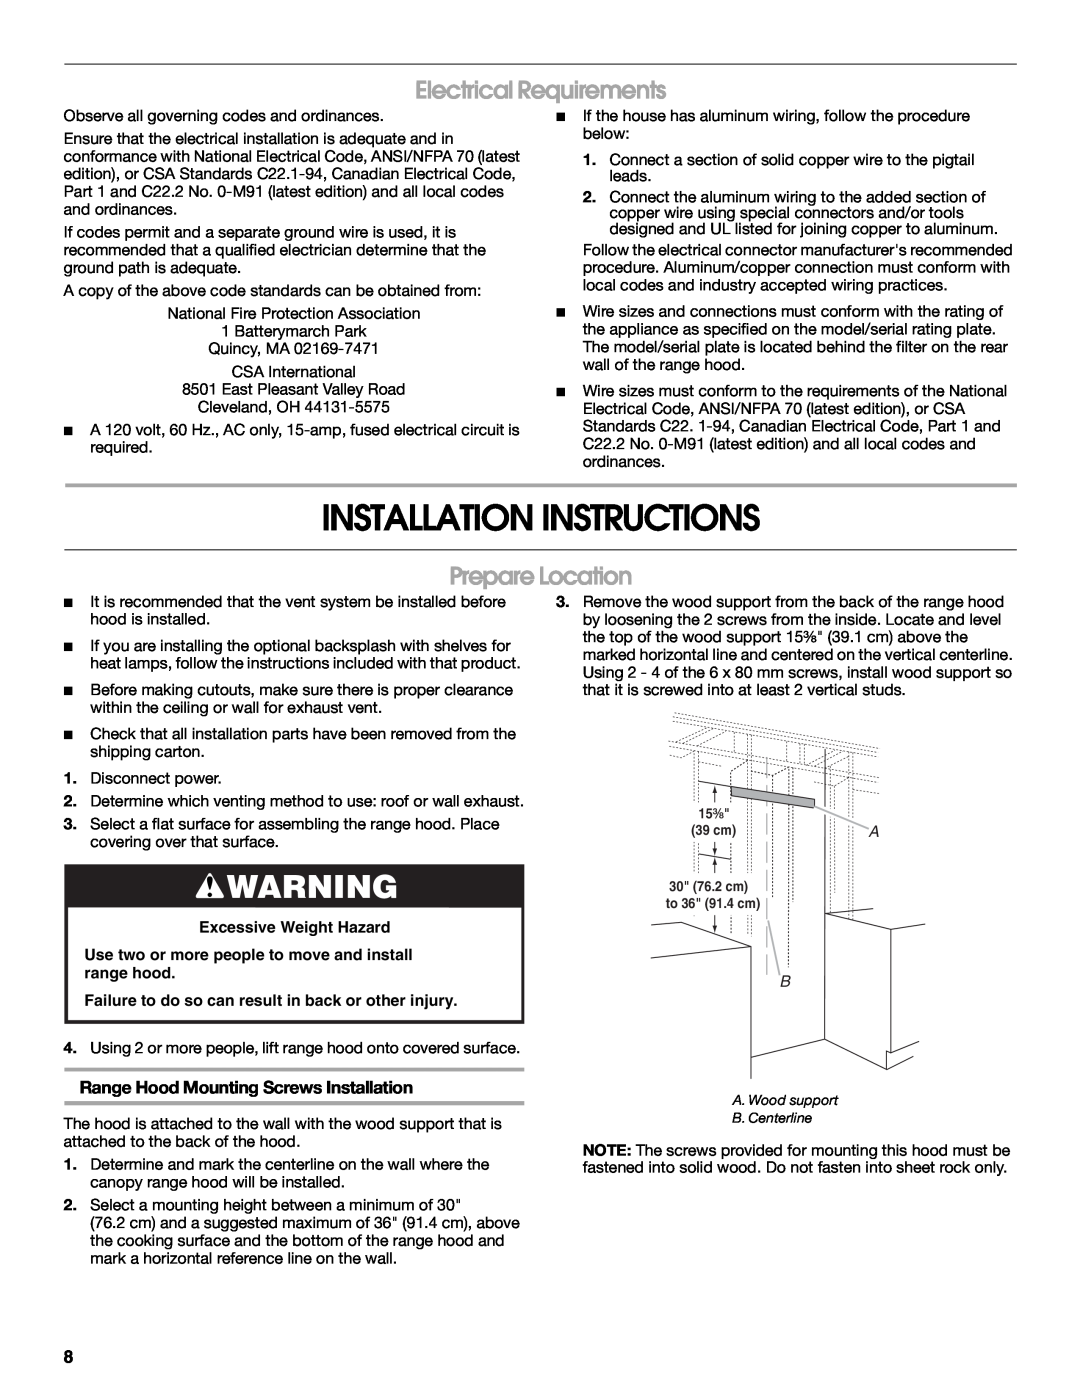 Jenn-Air W10274316B, LI3UNB installation instructions Installation Instructions, Electrical Requirements, Prepare Location 